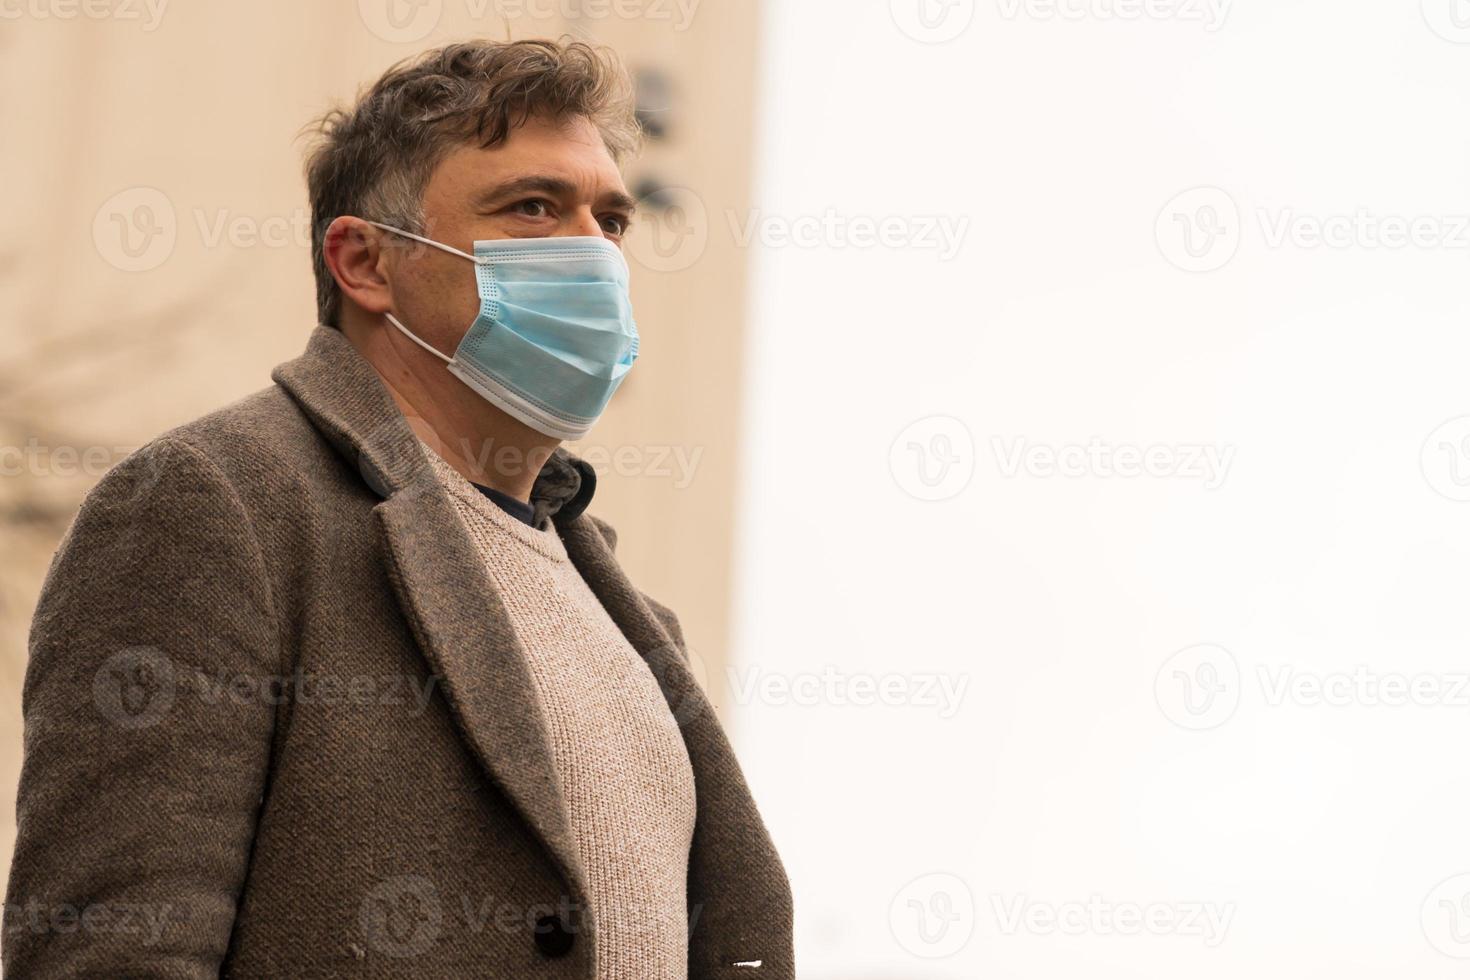 surto de doença coronavírus pandemia retrato de um homem cobrindo o rosto com uma máscara médica para proteger o nariz e a boca foto